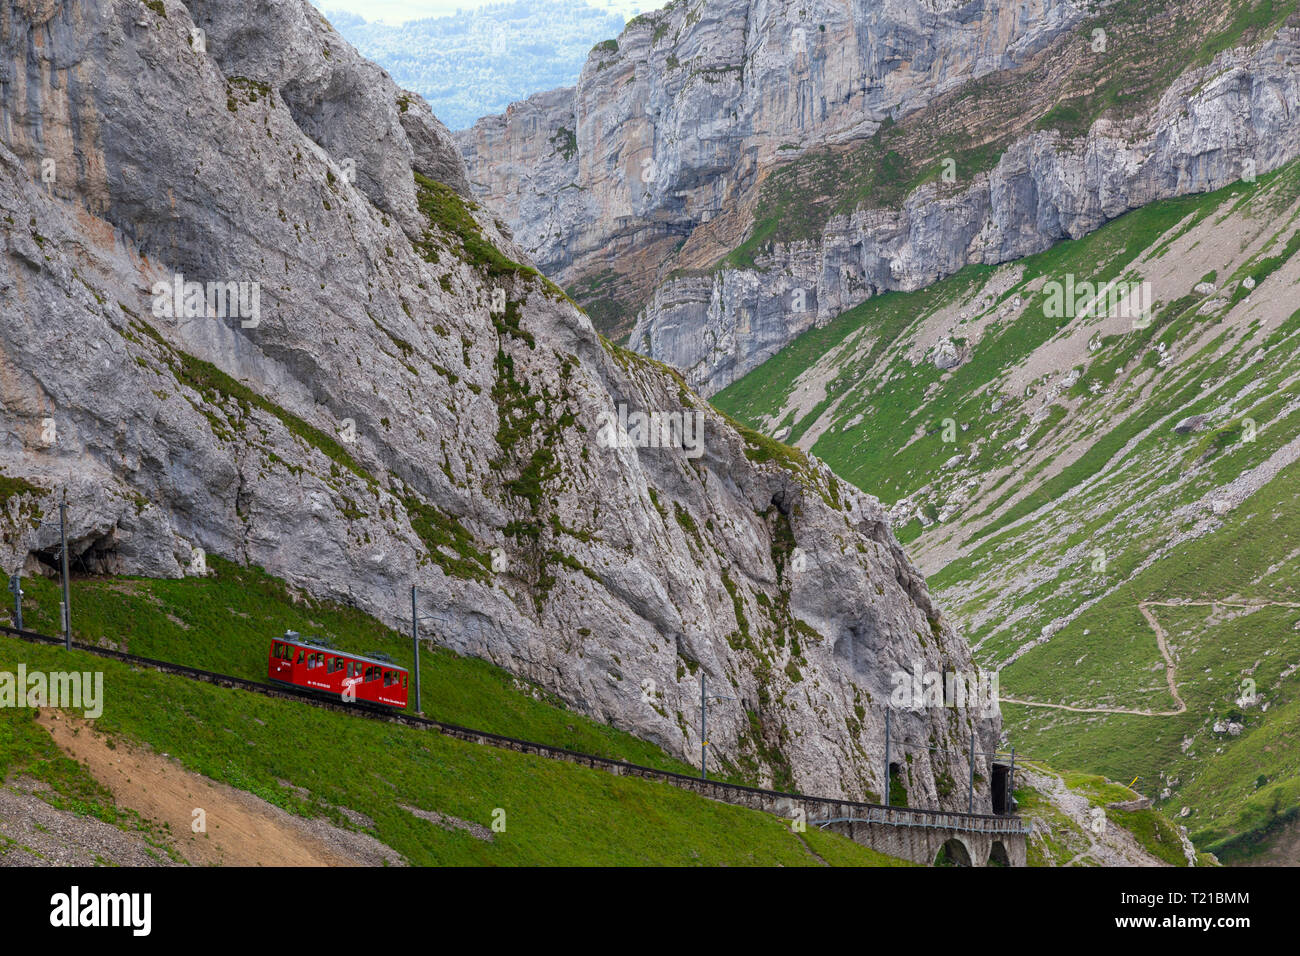 Ferrovia a cremagliera per il Monte Pilatus, un ricreative montagna vicino a Lucerna, il 48% di pendenza che lo rende il più ripido ruota dentata railw Foto Stock